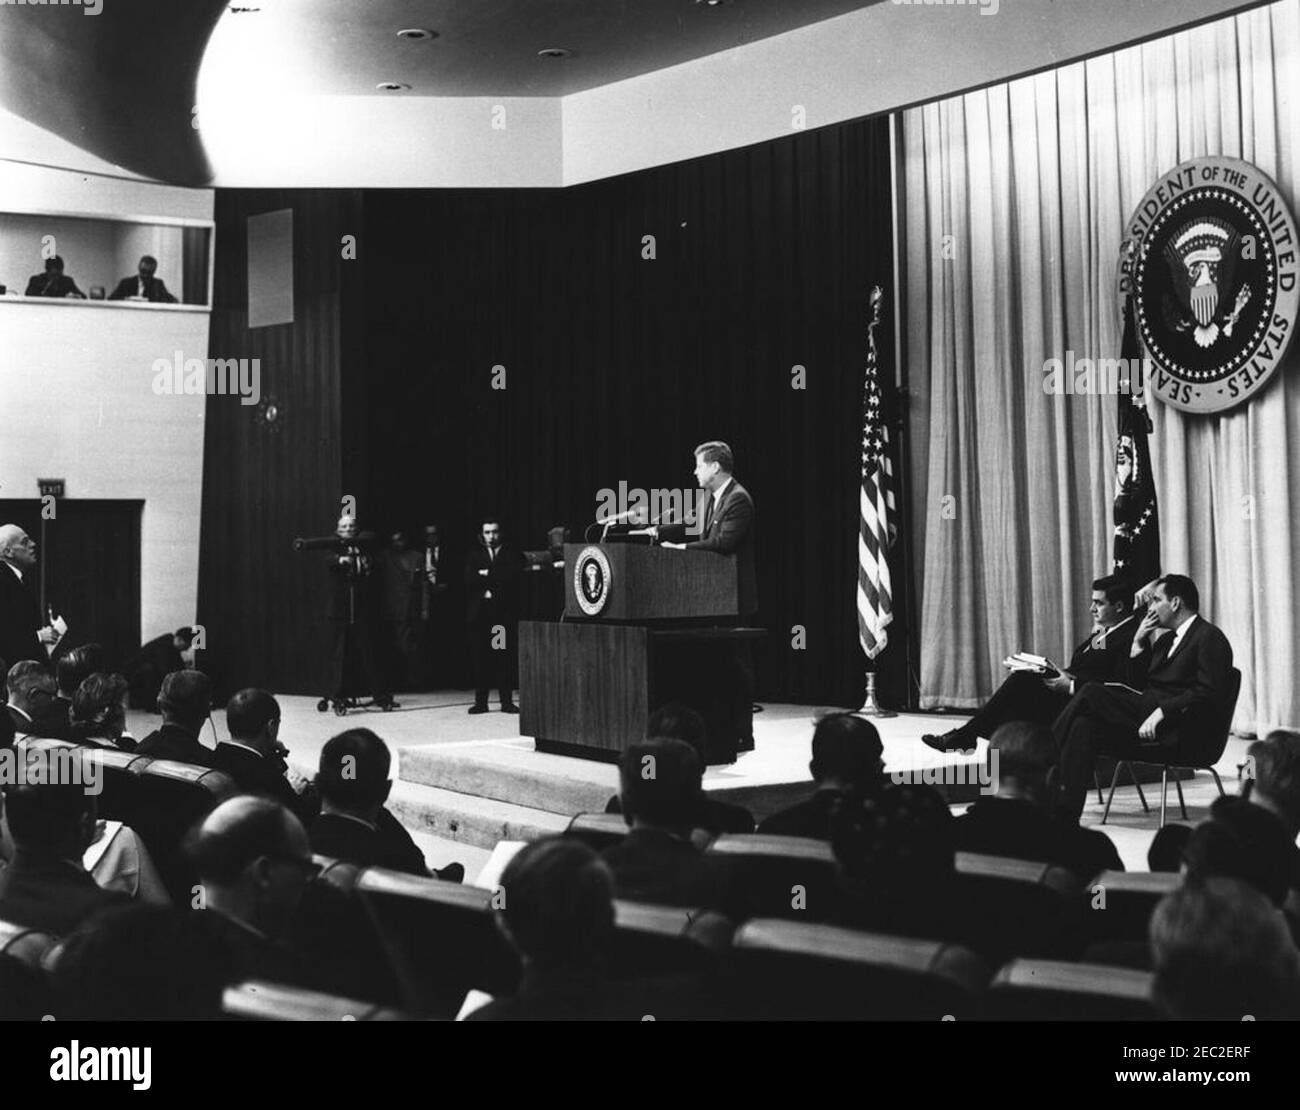 Conférence de presse à l'Auditorium du Département d'État, 6:00. Le président John F. Kennedy parle du conférencier lors d'une conférence de presse. Le secrétaire de presse, Pierre Salinger, et le secrétaire de presse adjoint, Malcolm Kilduff, sont assis sur la droite. Auditorium du département d'État, Washington, D.C. Banque D'Images